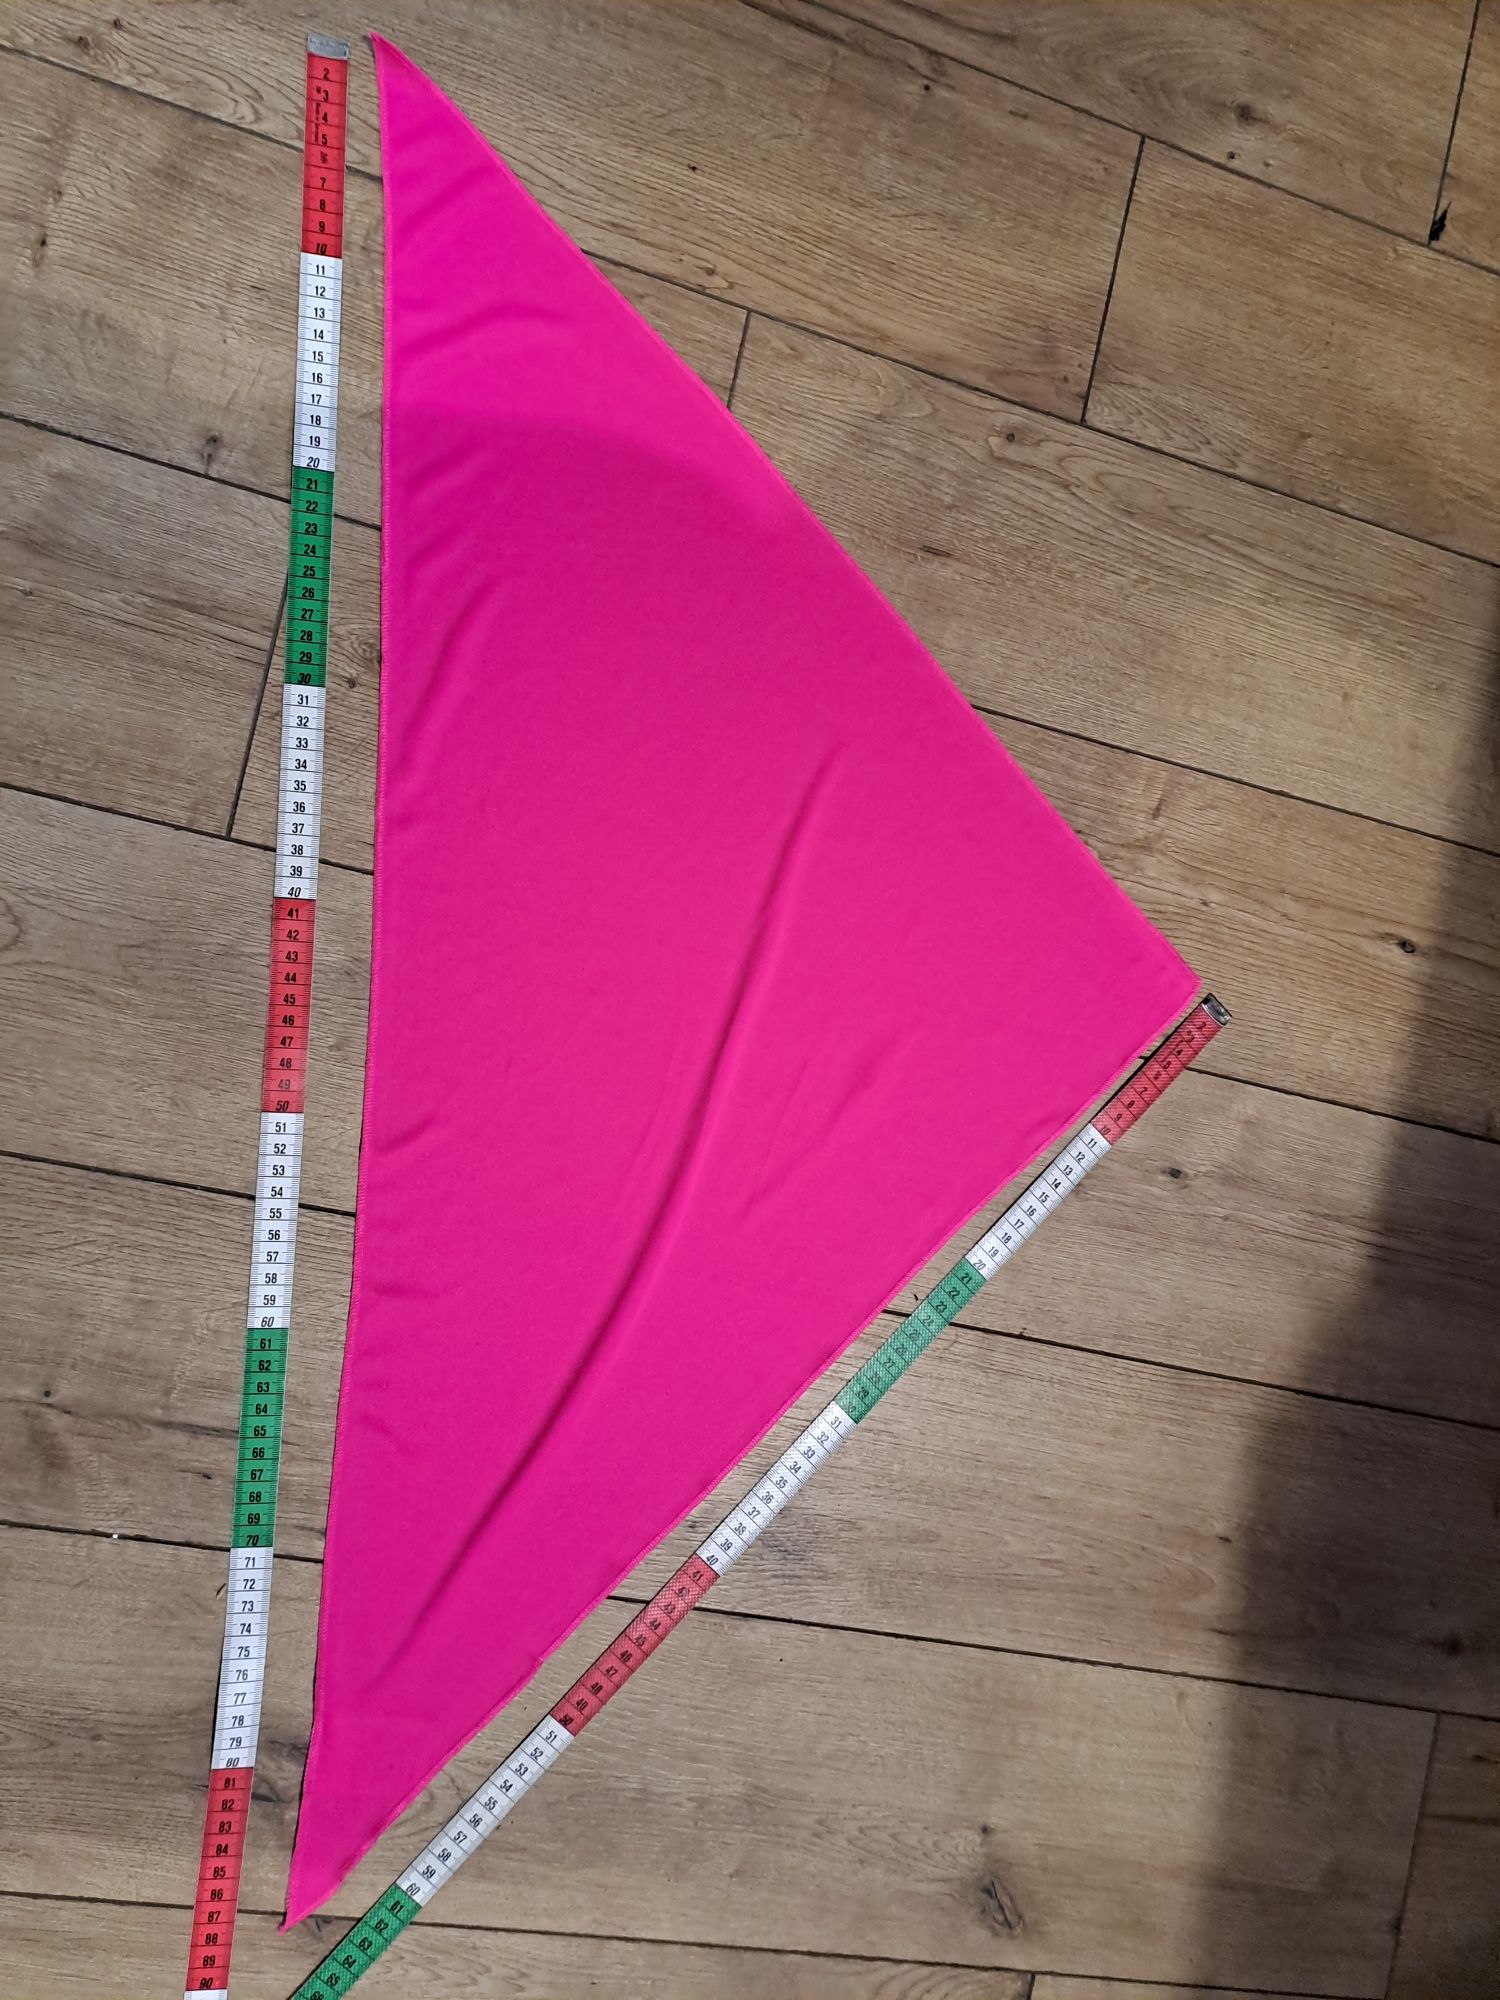 Różowa chusta trójkątna, nowa, poliestrowa okolo 65 x 85x 65 cm